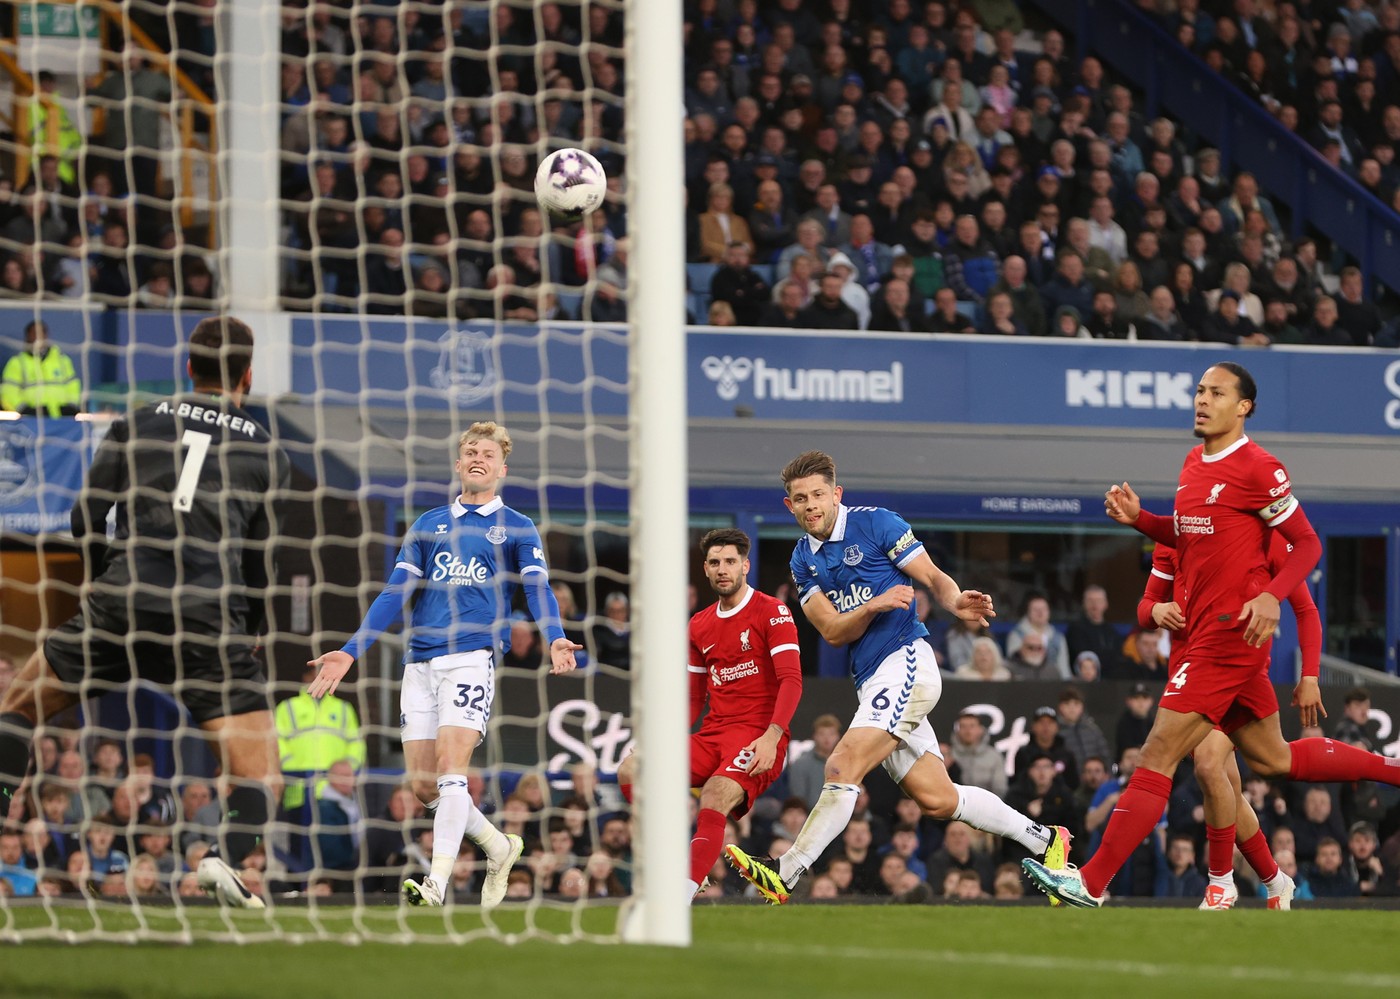 Everton - Liverpool 2-0, ACUM, DGS 2. Echipa lui Jurgen Klopp are probleme în ”derby-ul Merseyside”